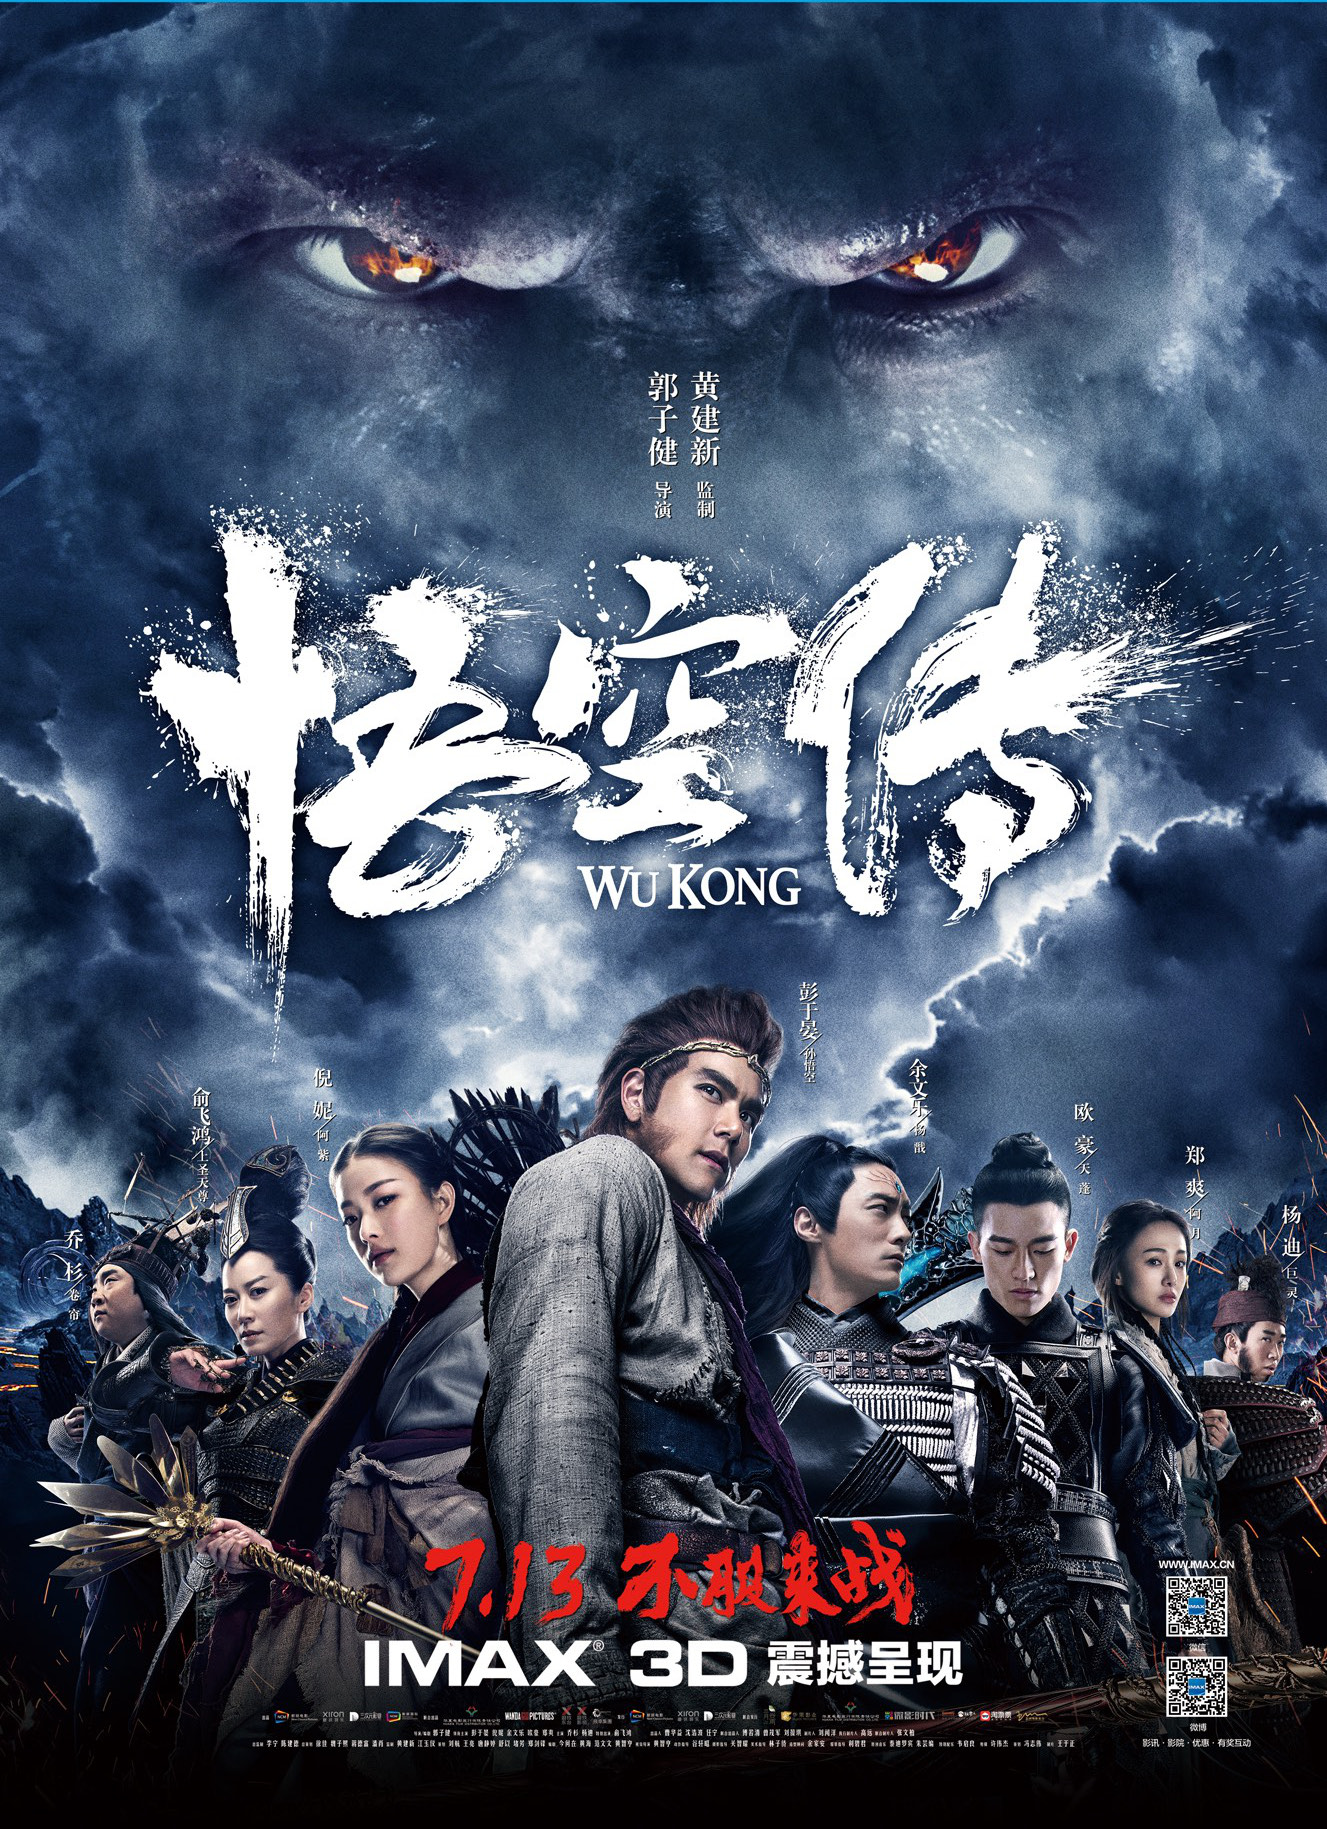 ดูหนังออนไลน์ฟรี WUKONG 2017 หงอคง กำเนิดเทพเจ้าวานร ดูหนังชนโรง